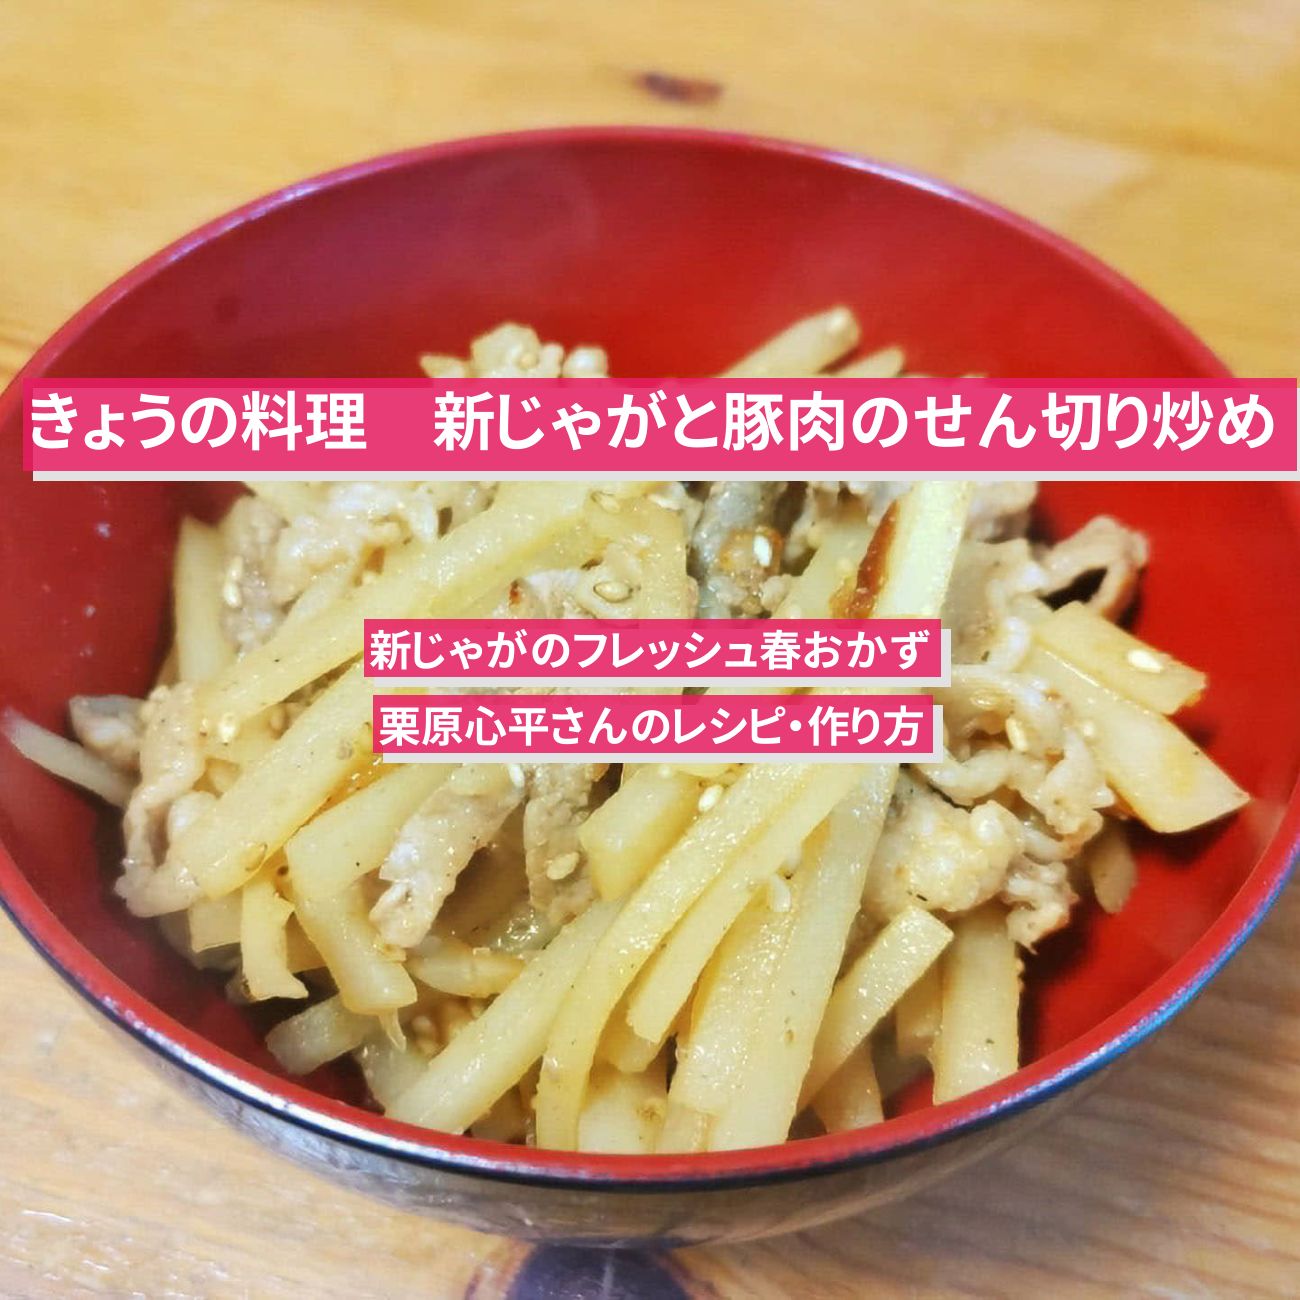 【きょうの料理】『新じゃがと豚肉のせん切り炒め』栗原心平さんのレシピ・作り方